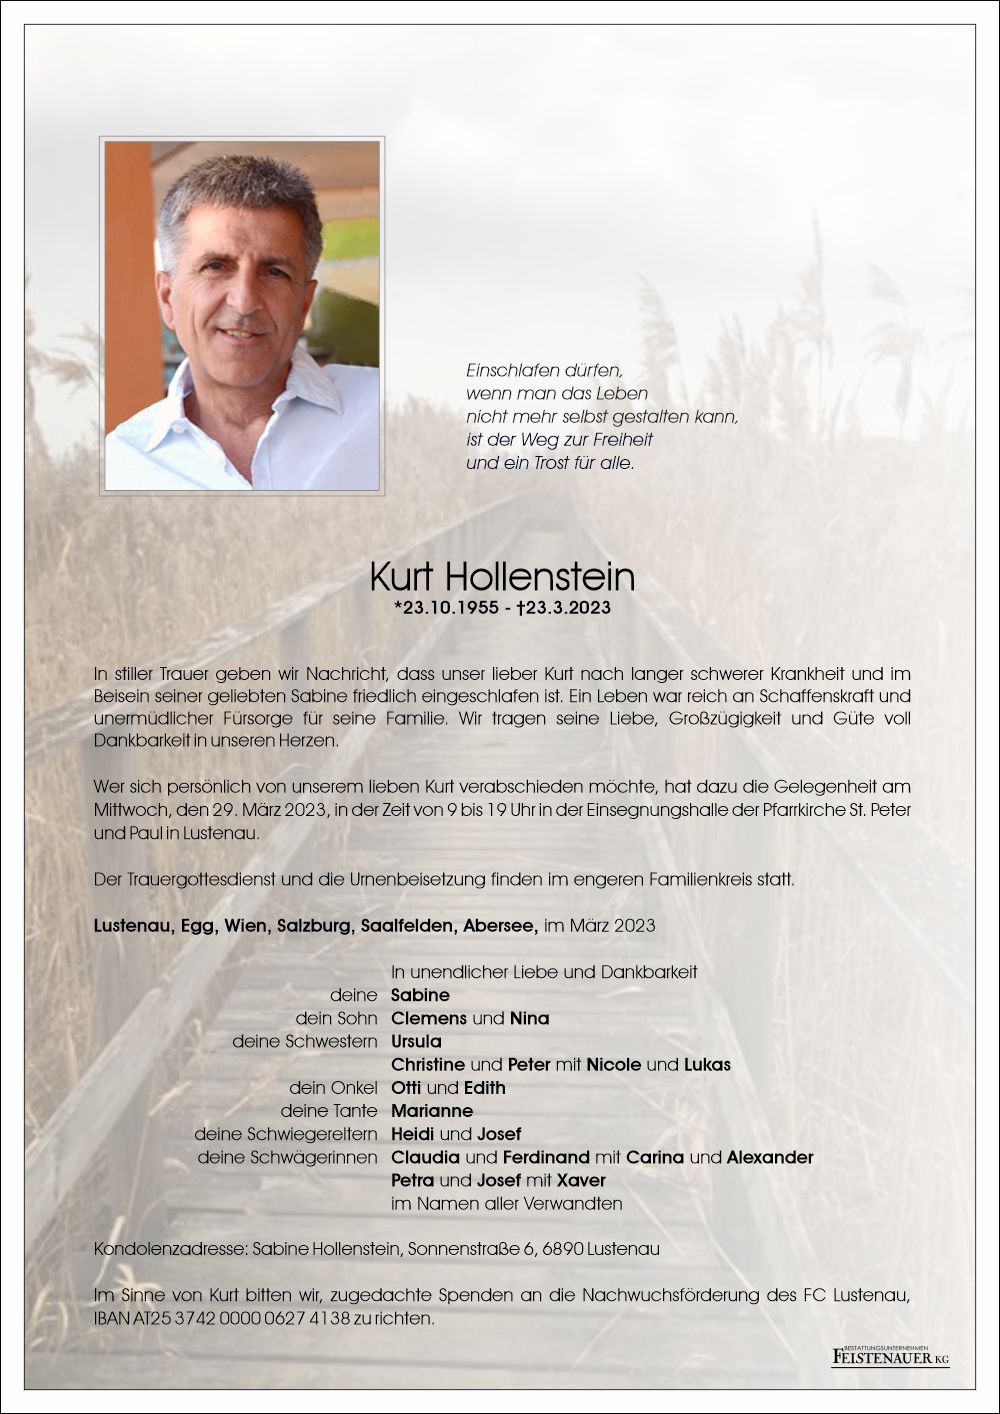 Kurt Hollenstein